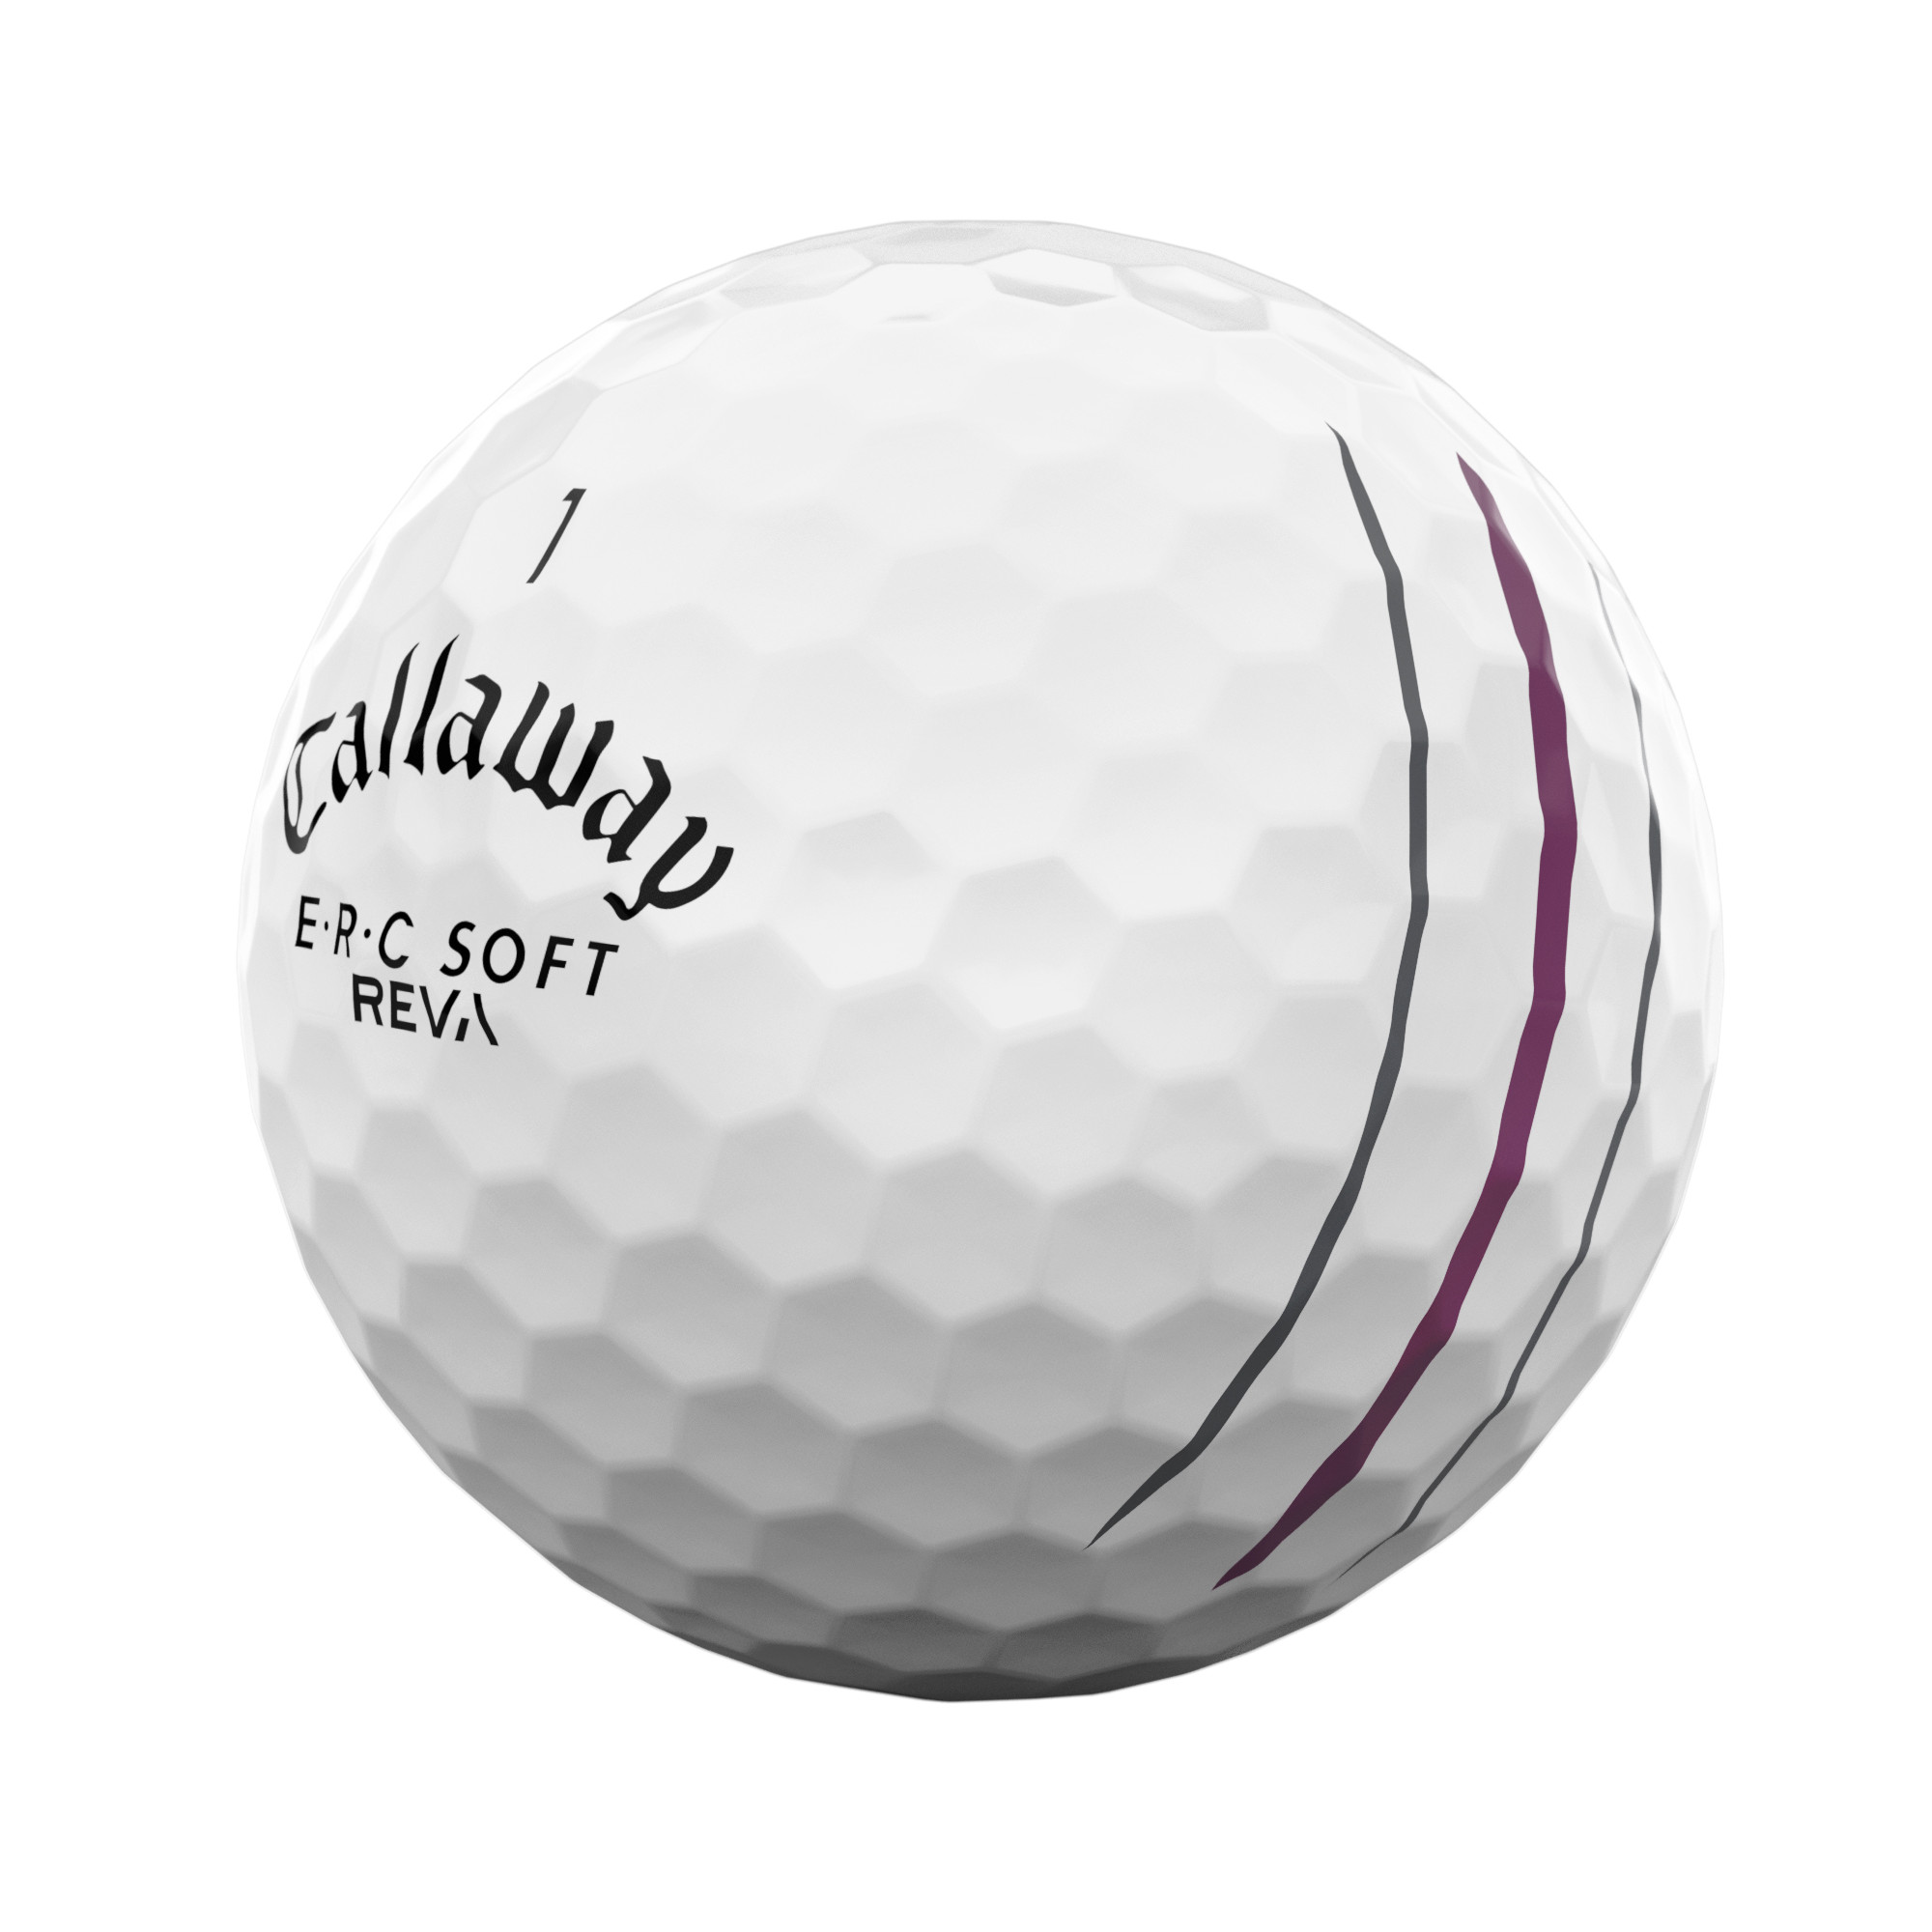 Callaway E.R.C. Soft REVA Golfbälle bedruckt, weiss (VPE à 12 Bälle)